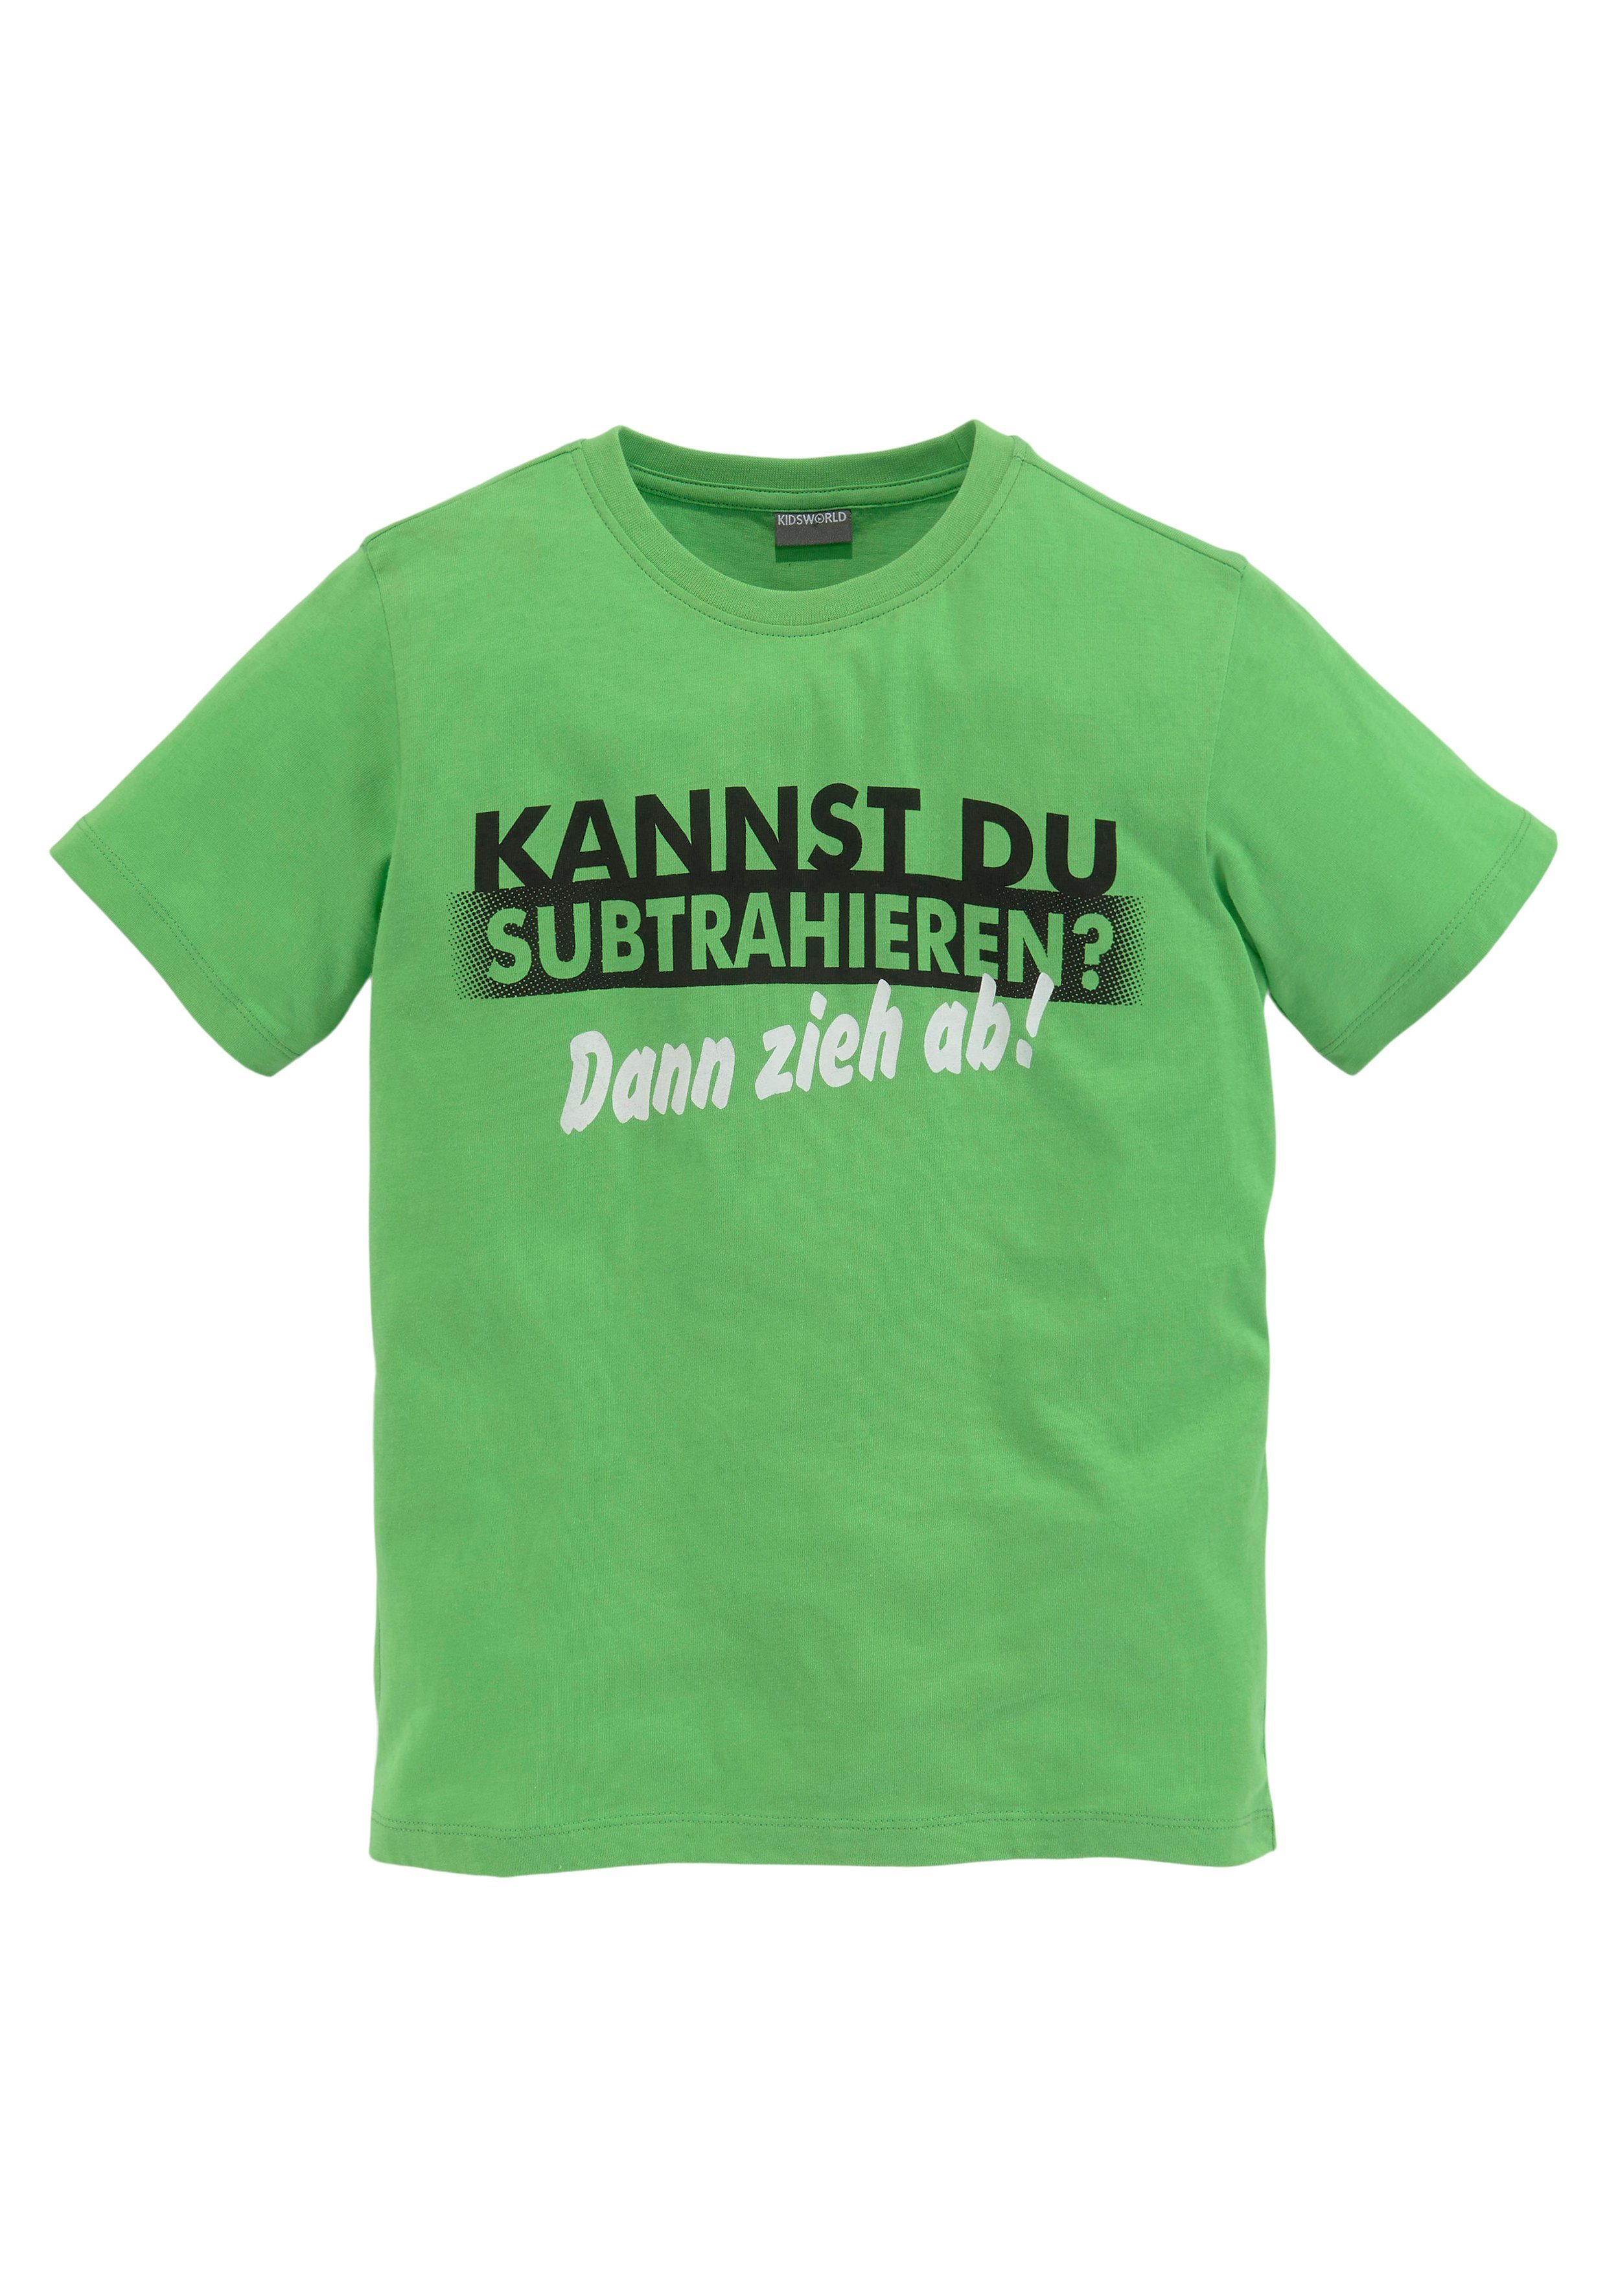 SUBTRAHIEREN?, Spruch T-Shirt KANNST KIDSWORLD DU